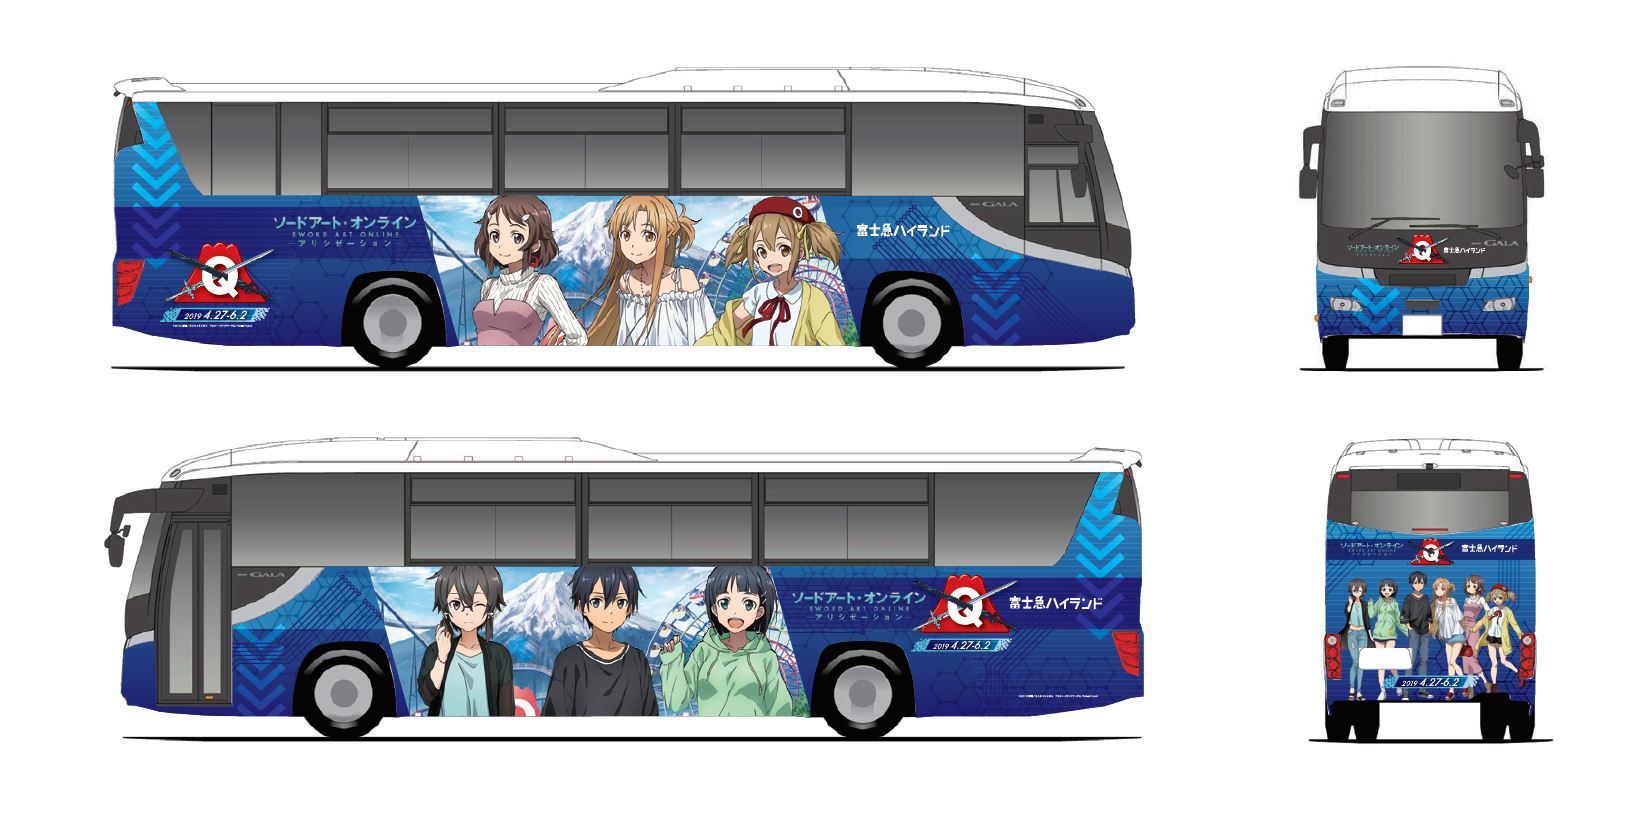 ラッピング高速バス (C)2017 川原 礫／ＫＡＤＯＫＡＷＡ アスキー・メディアワークス／SAO-A Project